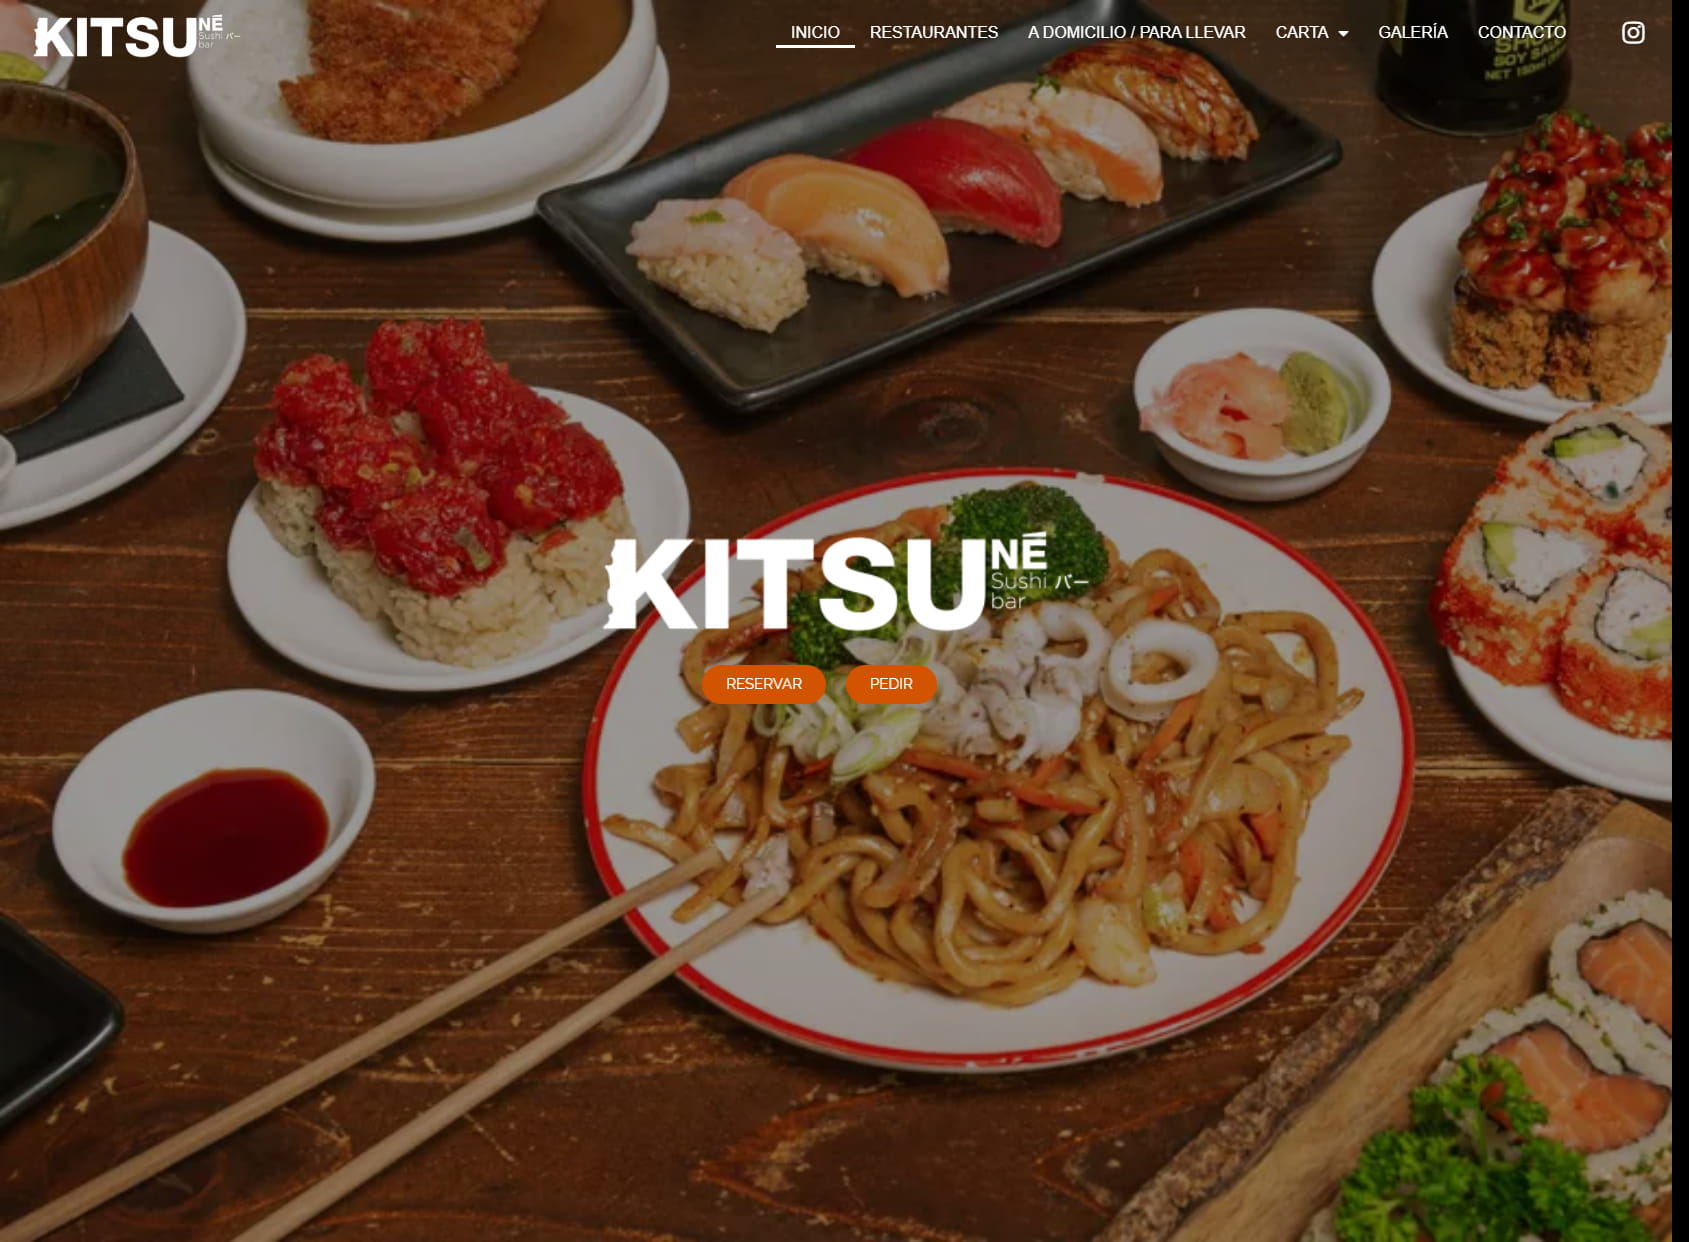 KITSUNE - Restaurante japonés en Barcelona. Sushi a domicilio y para llevar.